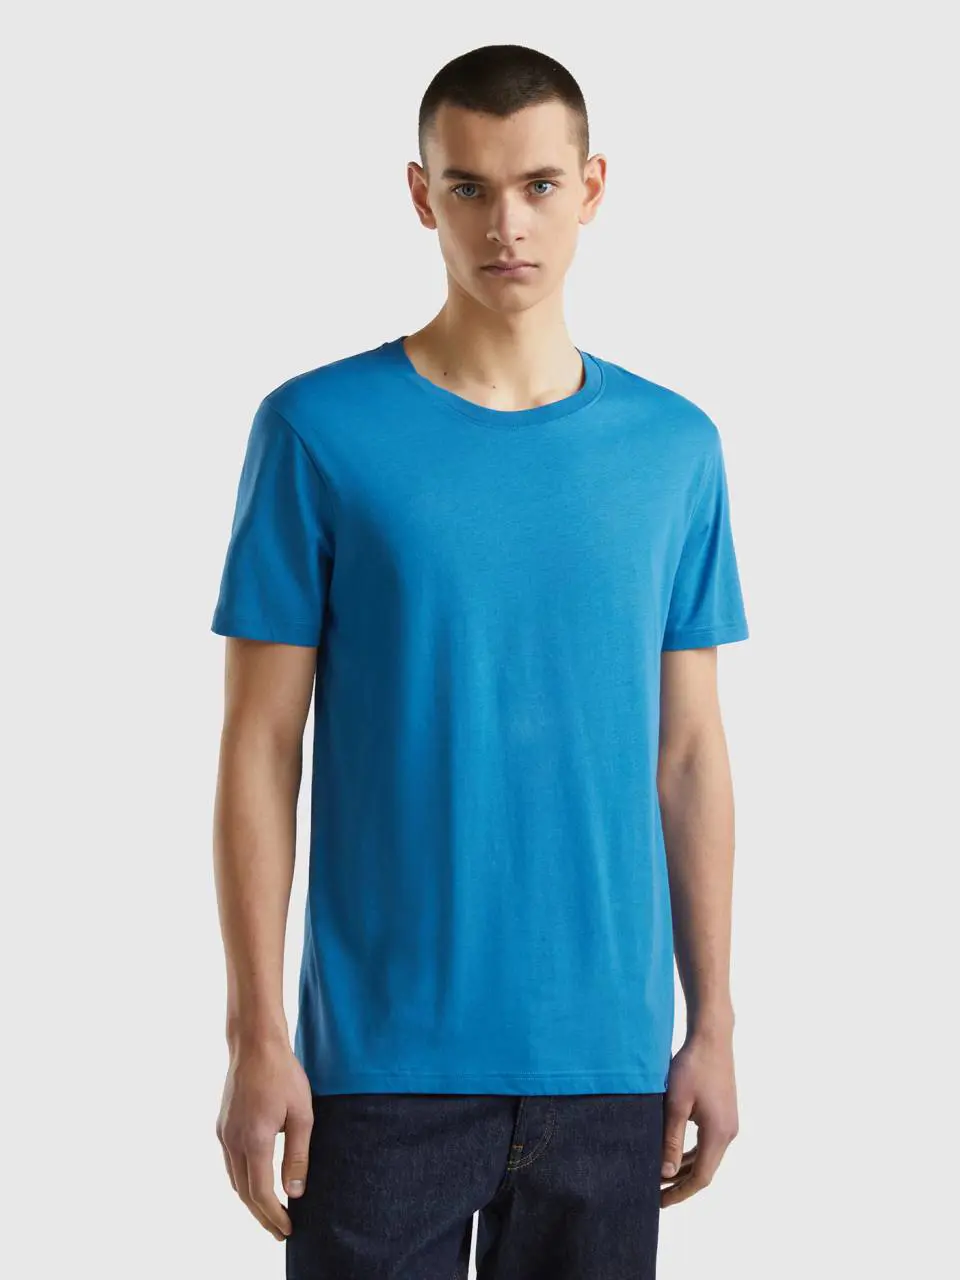 Benetton blue t-shirt. 1